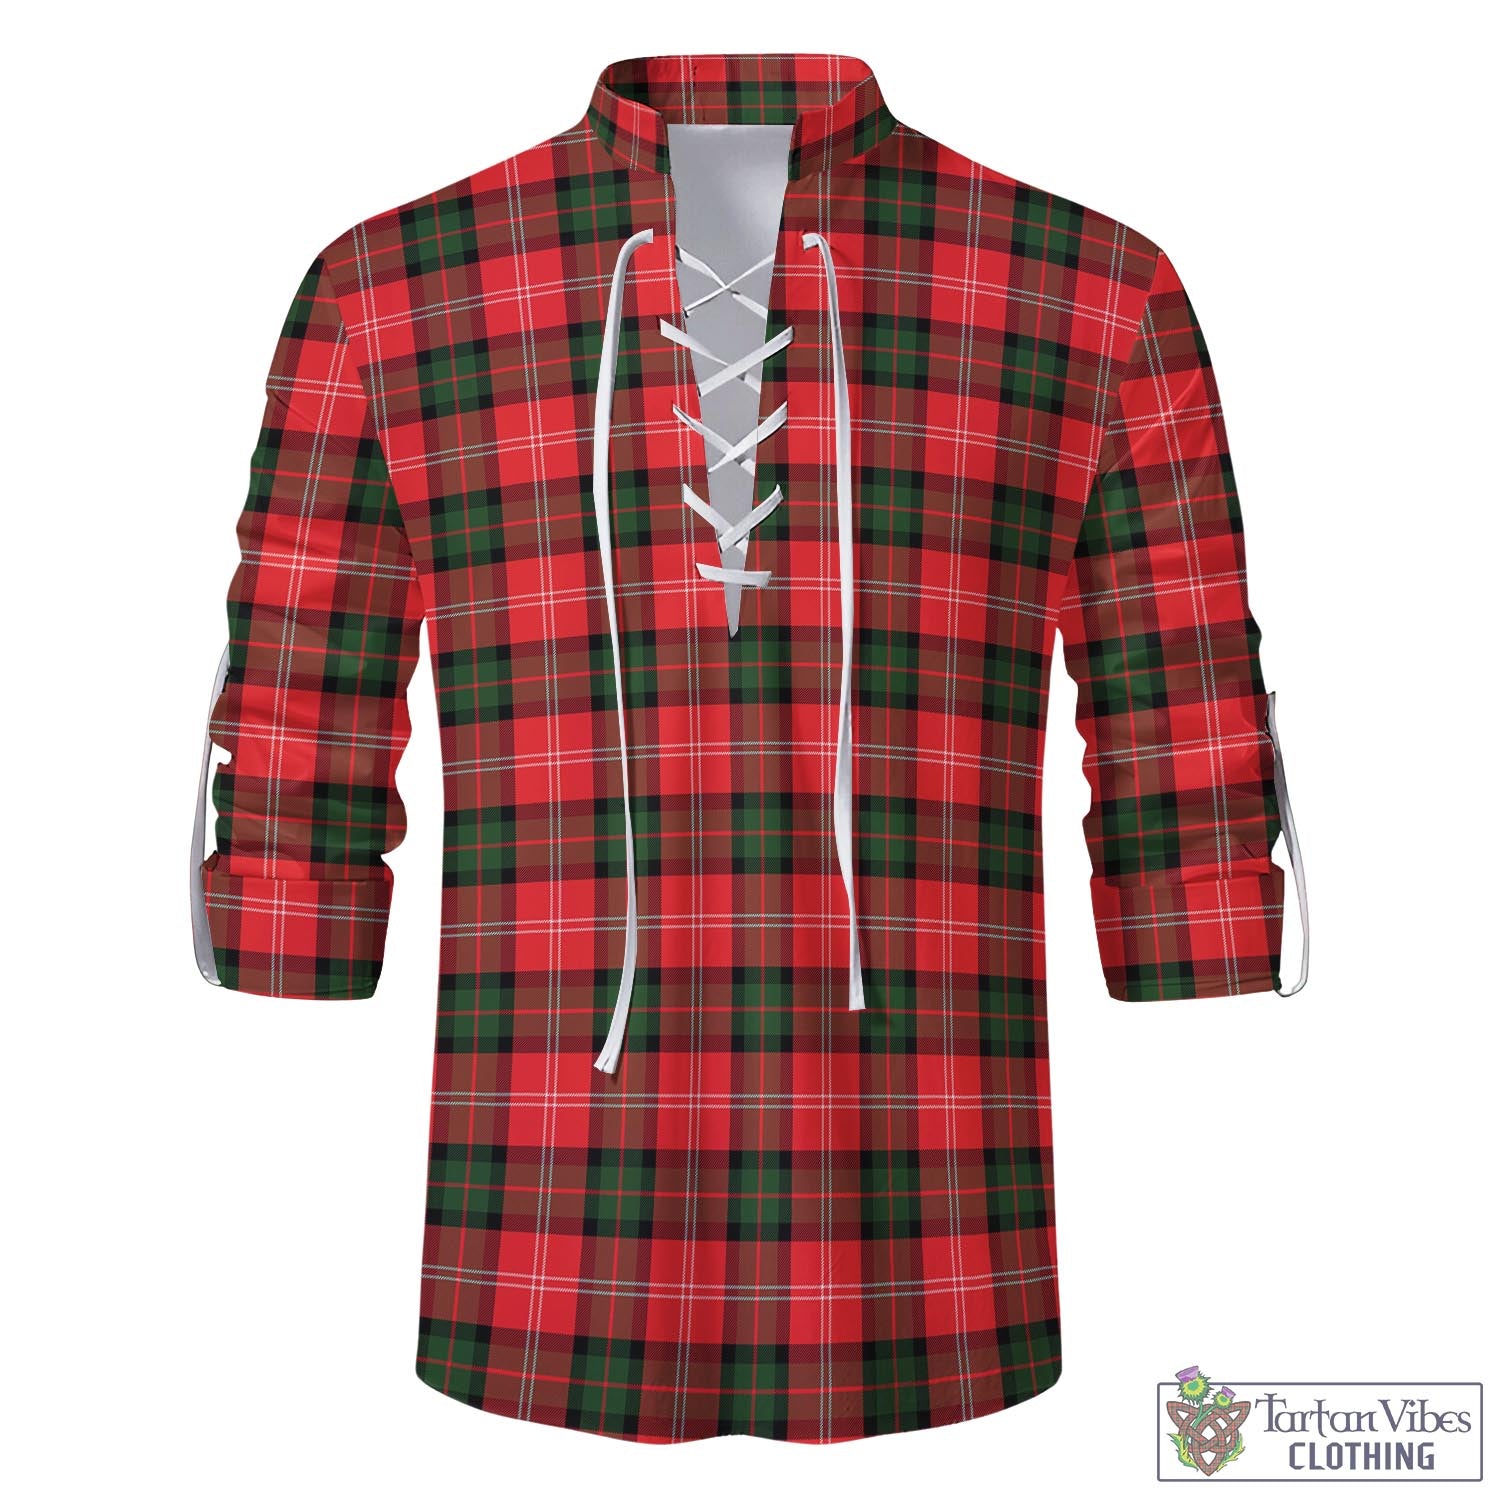 Tartan Vibes Clothing Nesbitt Modern Tartan Men's Scottish Traditional Jacobite Ghillie Kilt Shirt